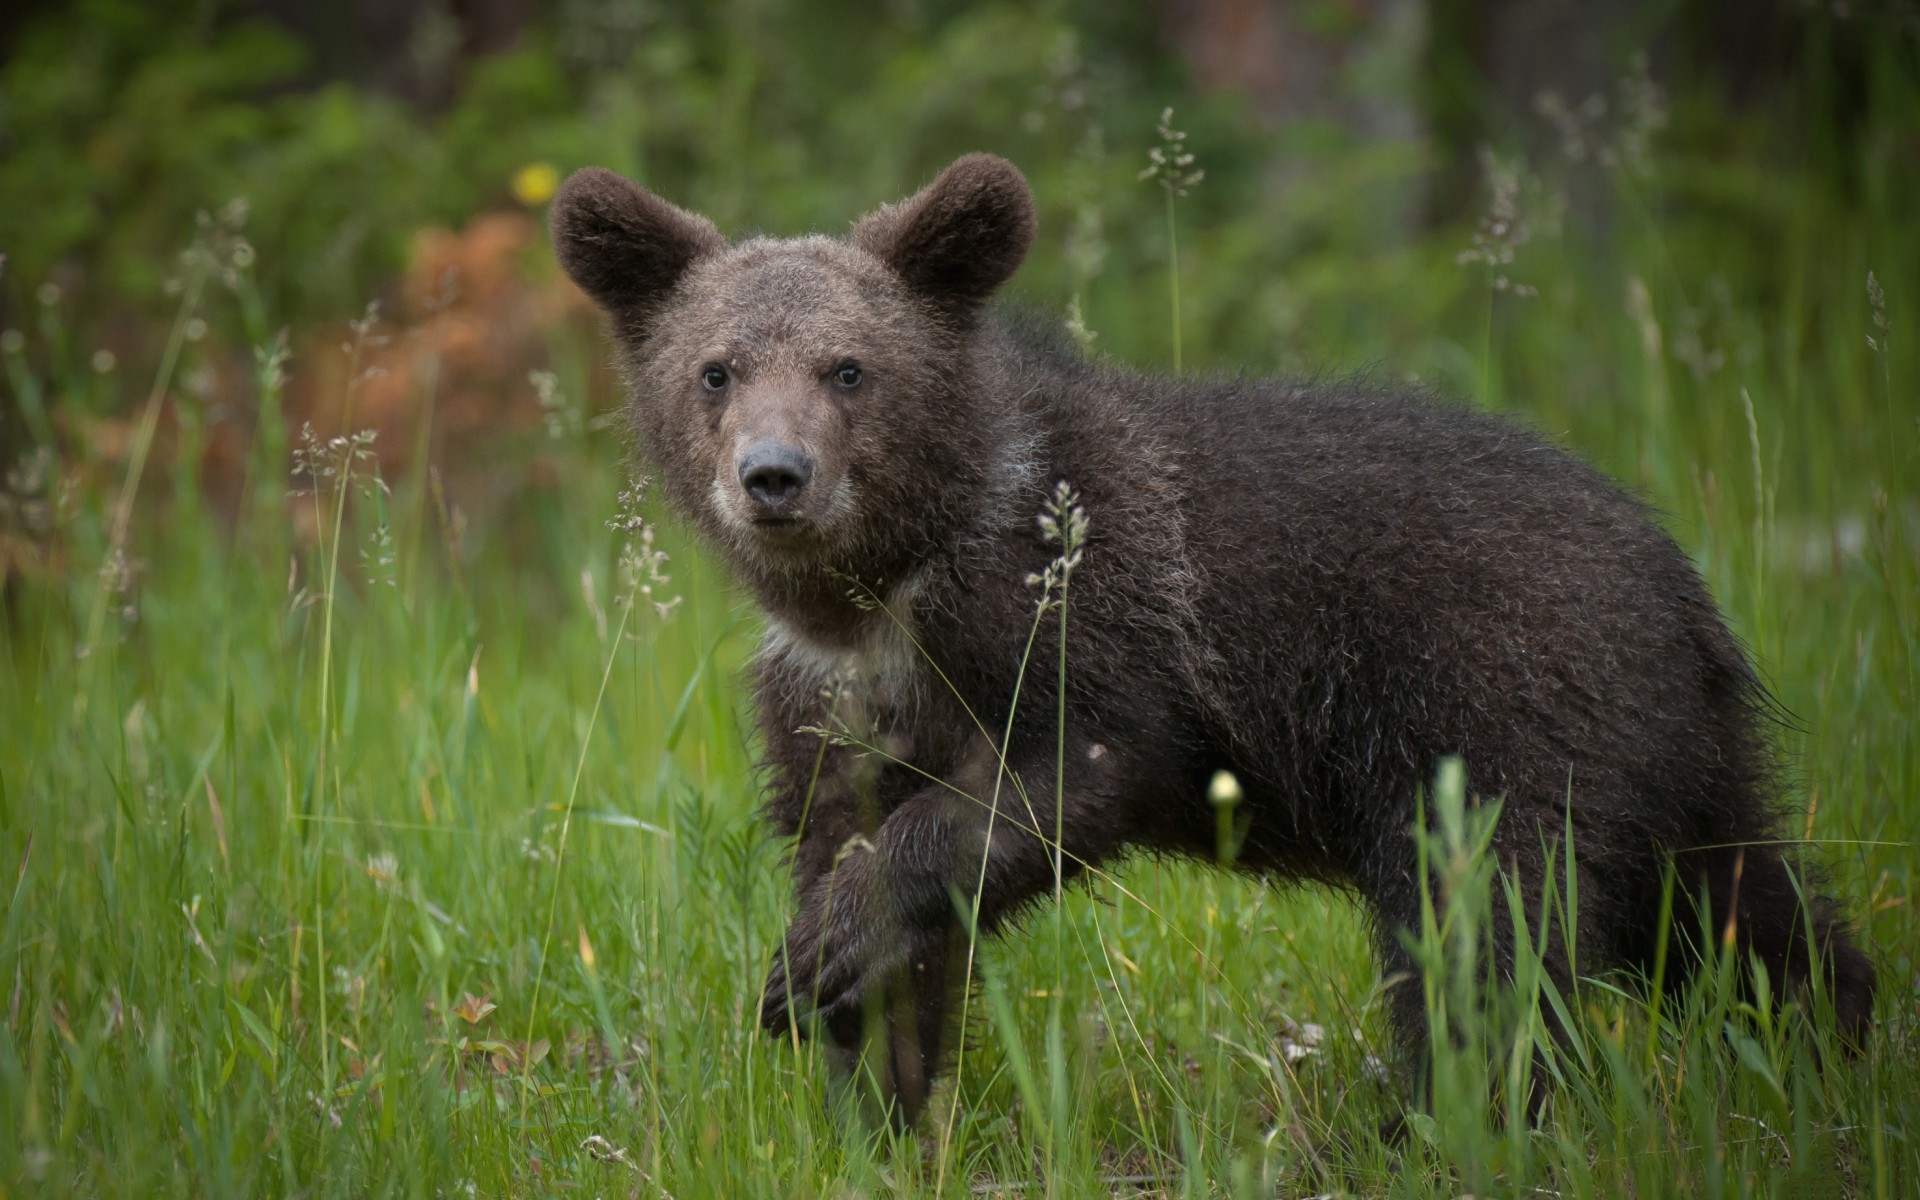 A bear cub on a green lawn